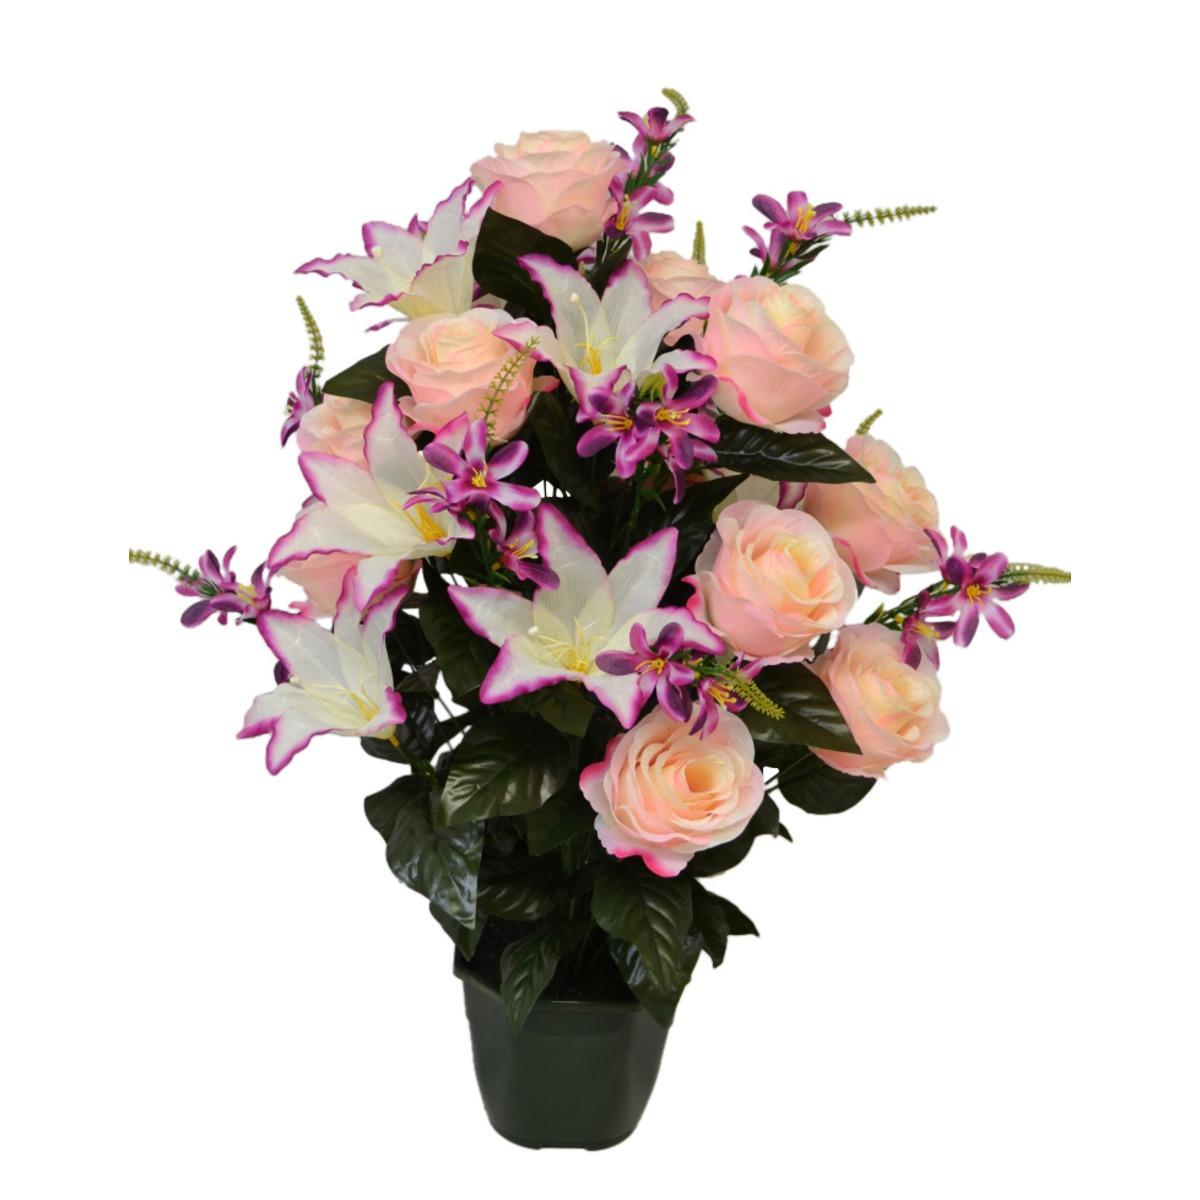 Potée roses + lys + mini fleurs - Hauteur 69 cm - Différents modèles